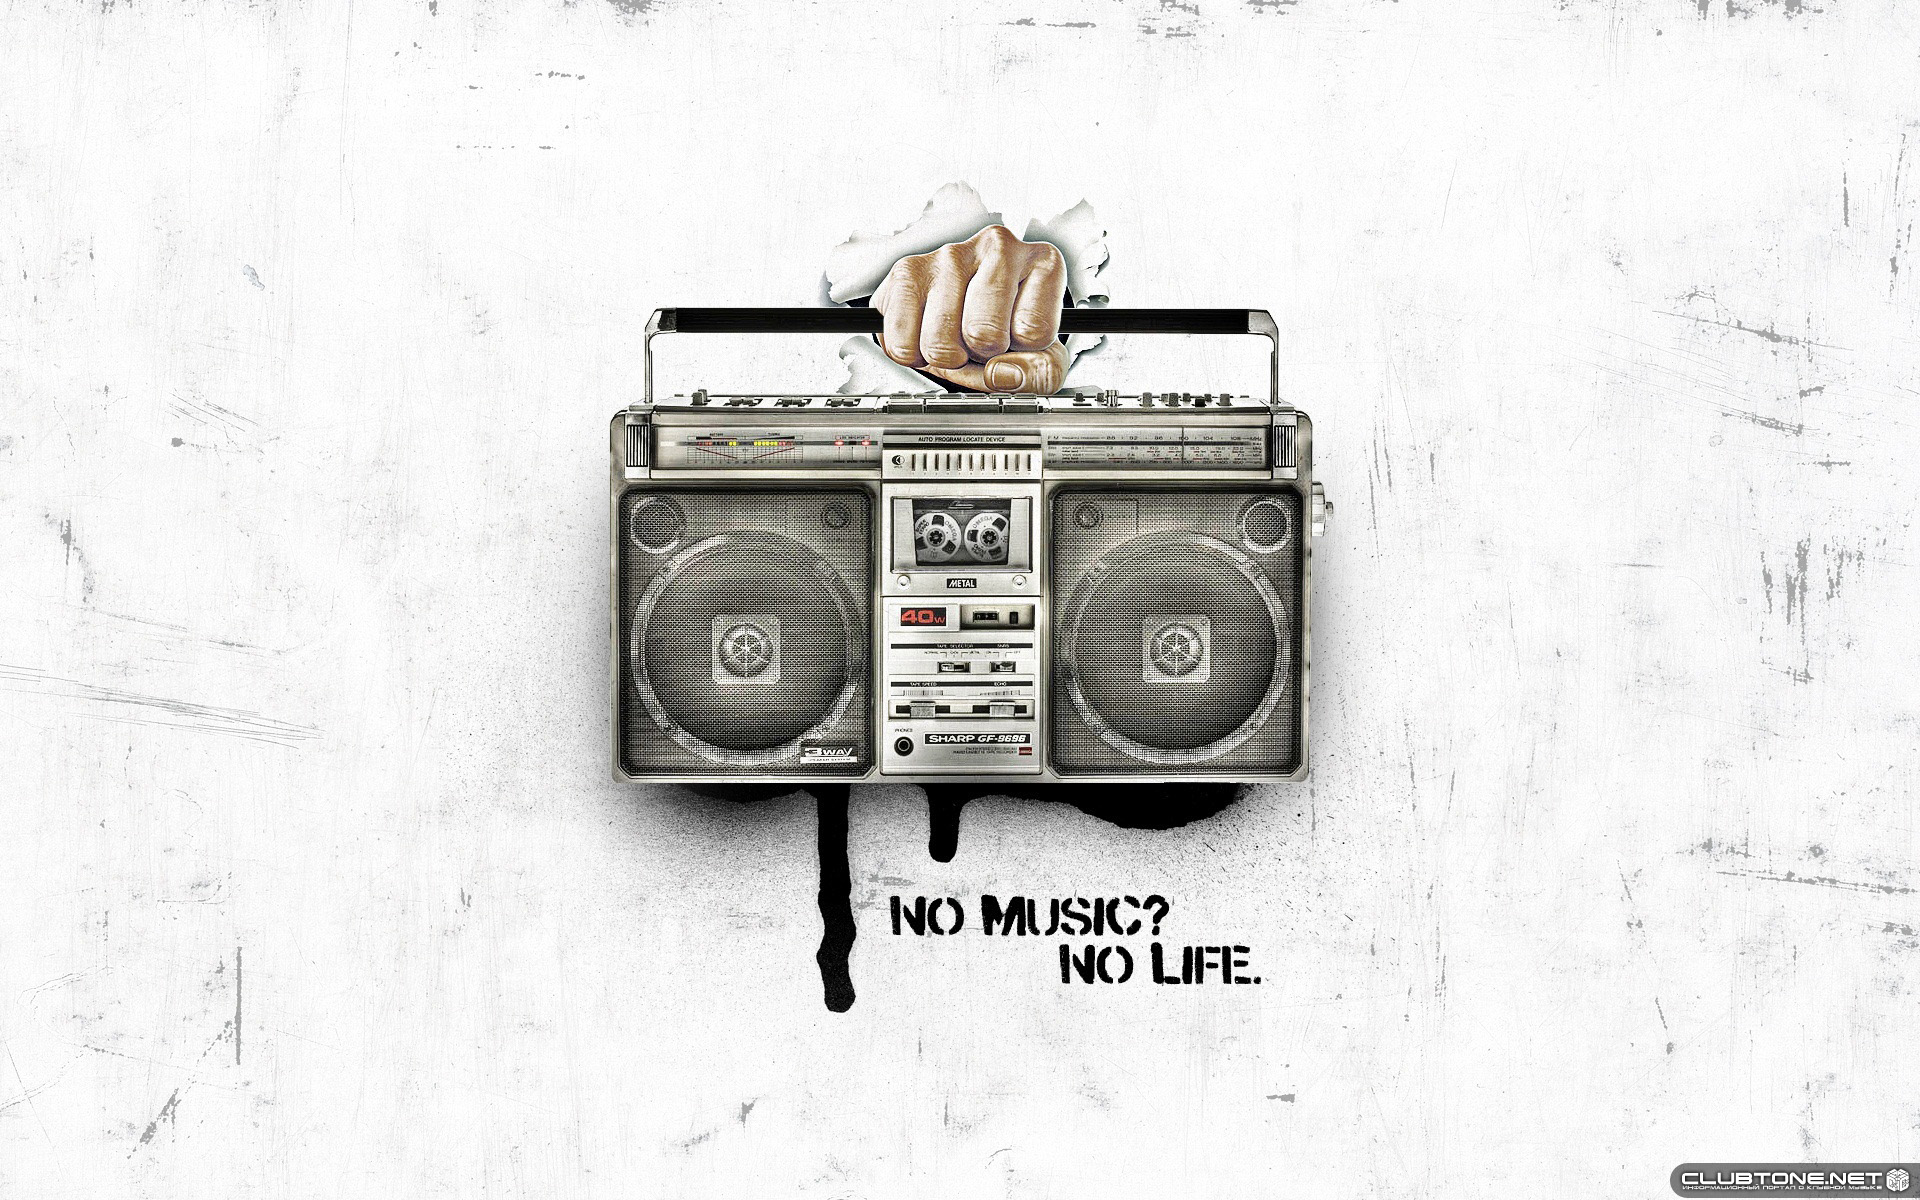 No musik? No life  